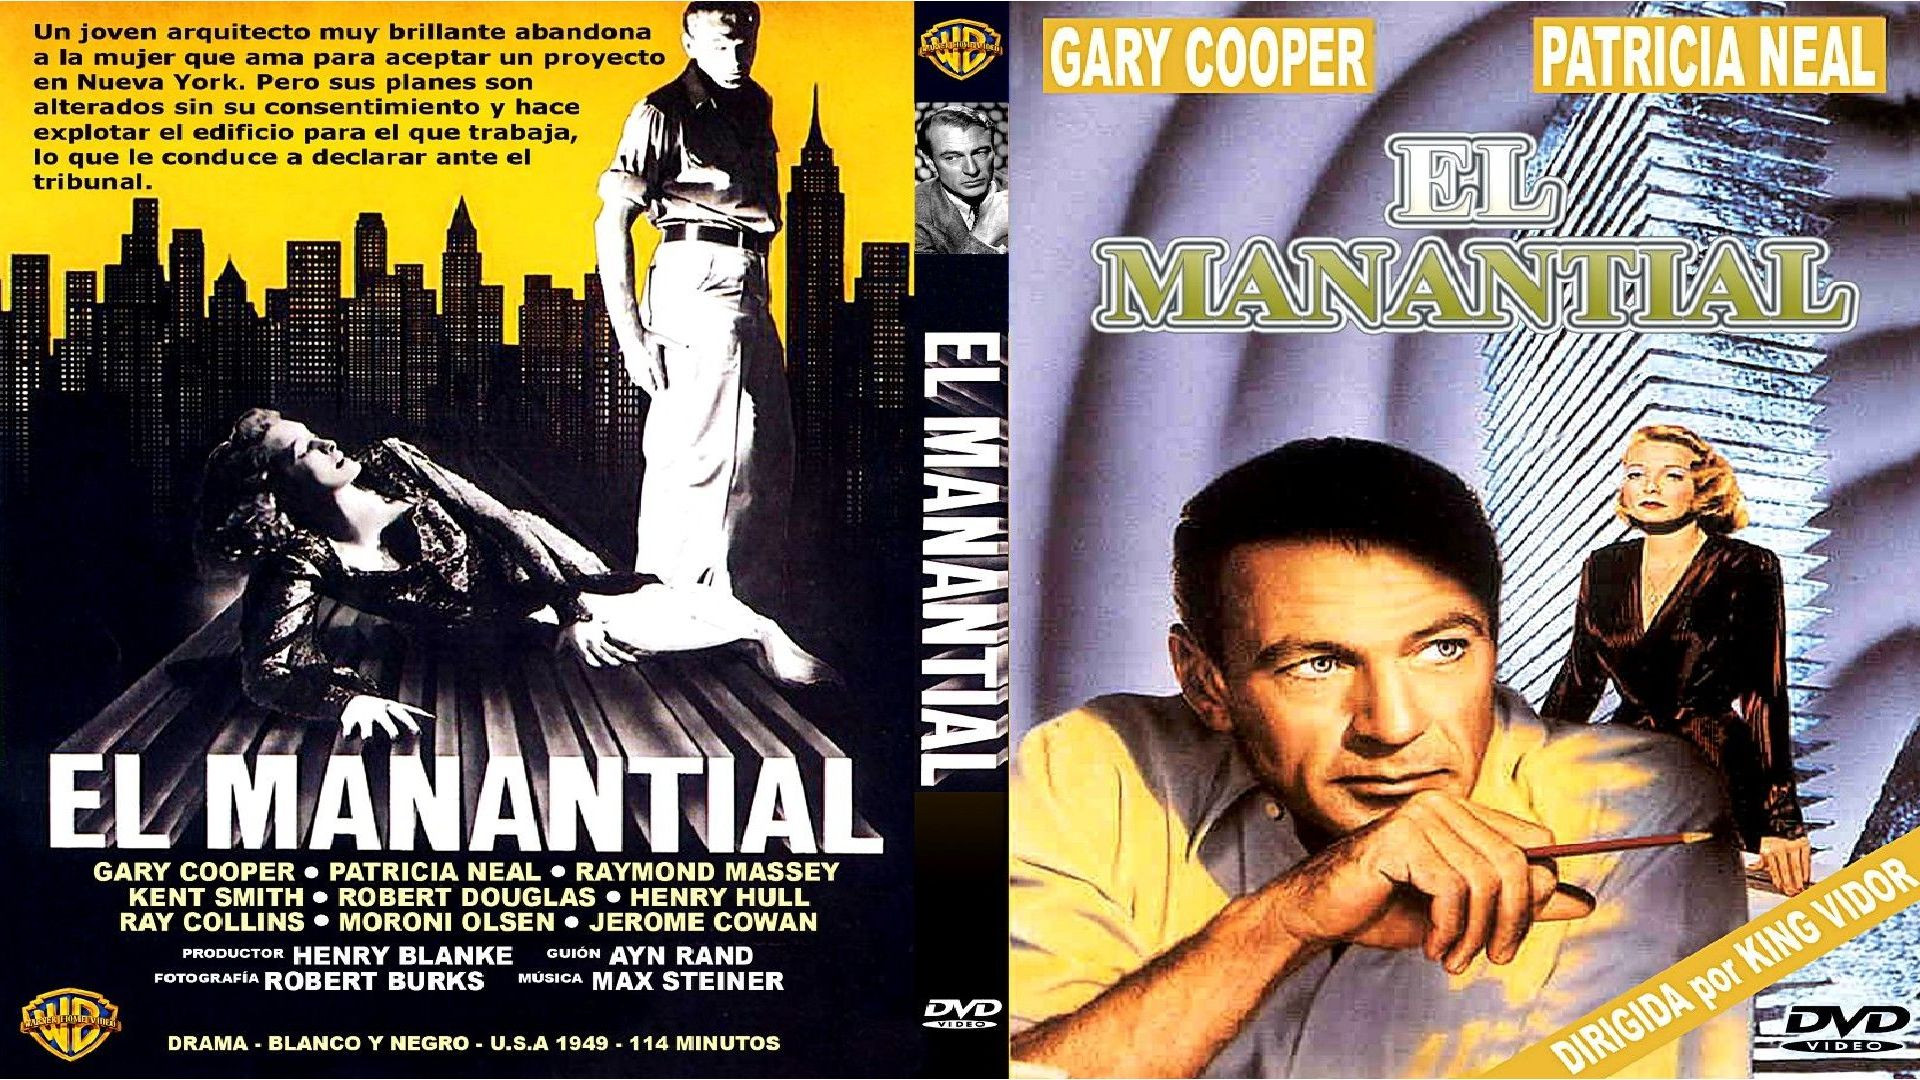 TRAILER El Manantial (1949) cas. + LINK